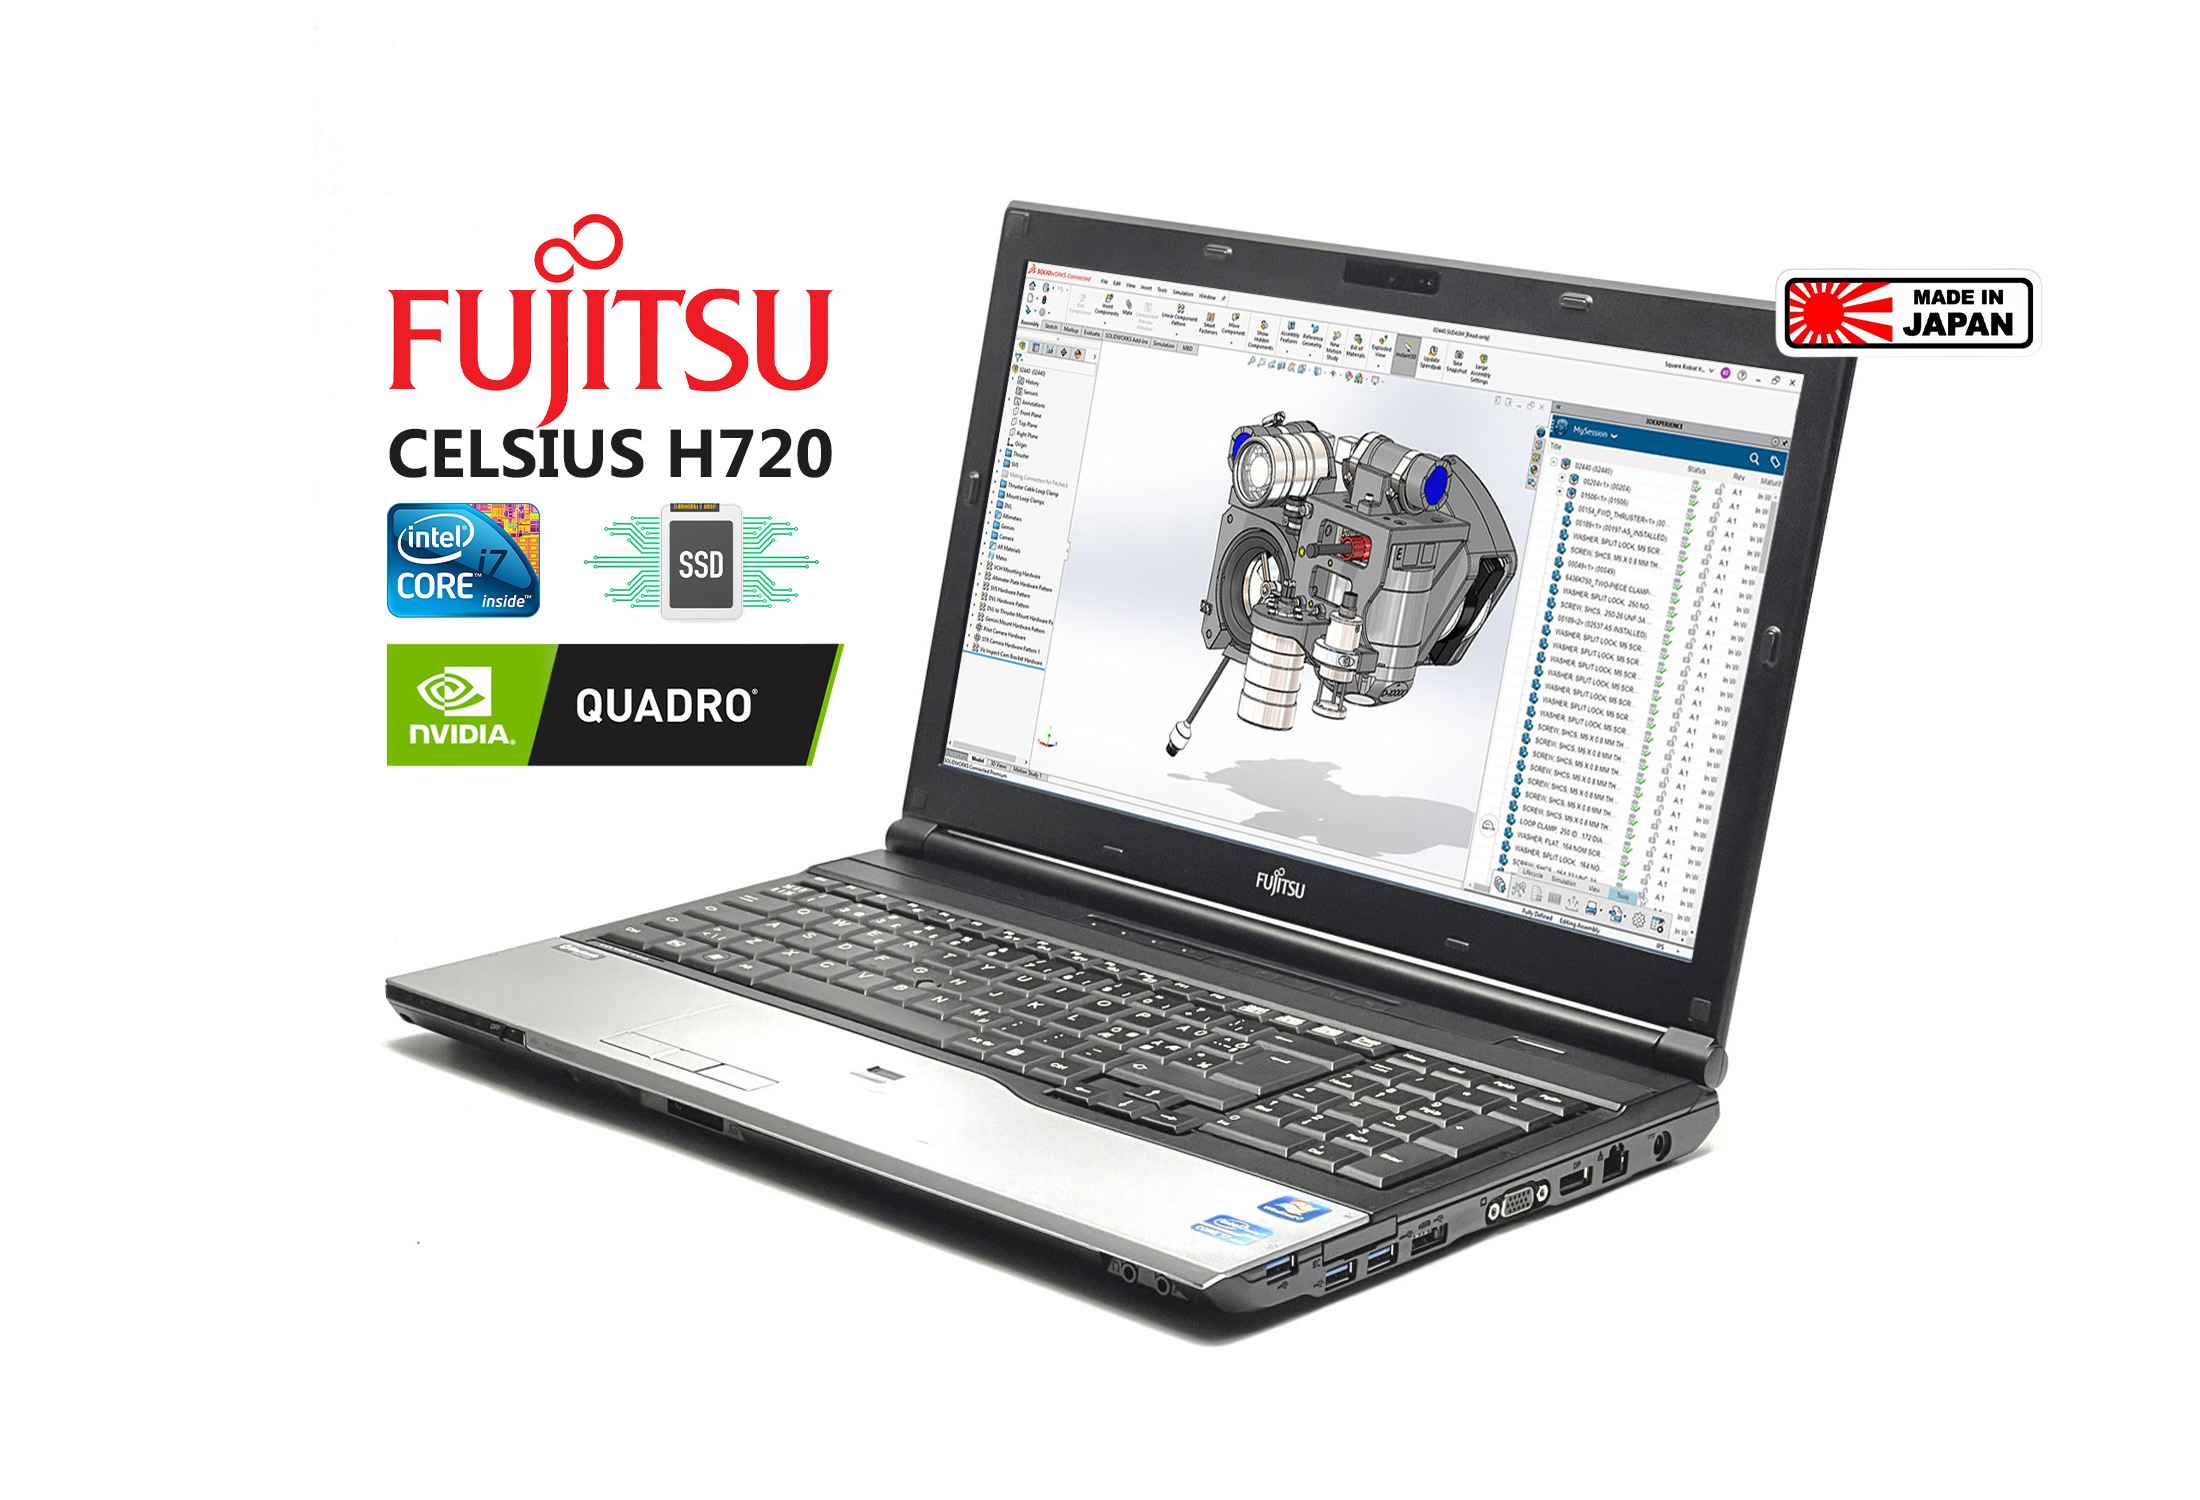 Fujitsu Celsius H720 i7-3720QM SSD FHD Quadro K1000M Camera